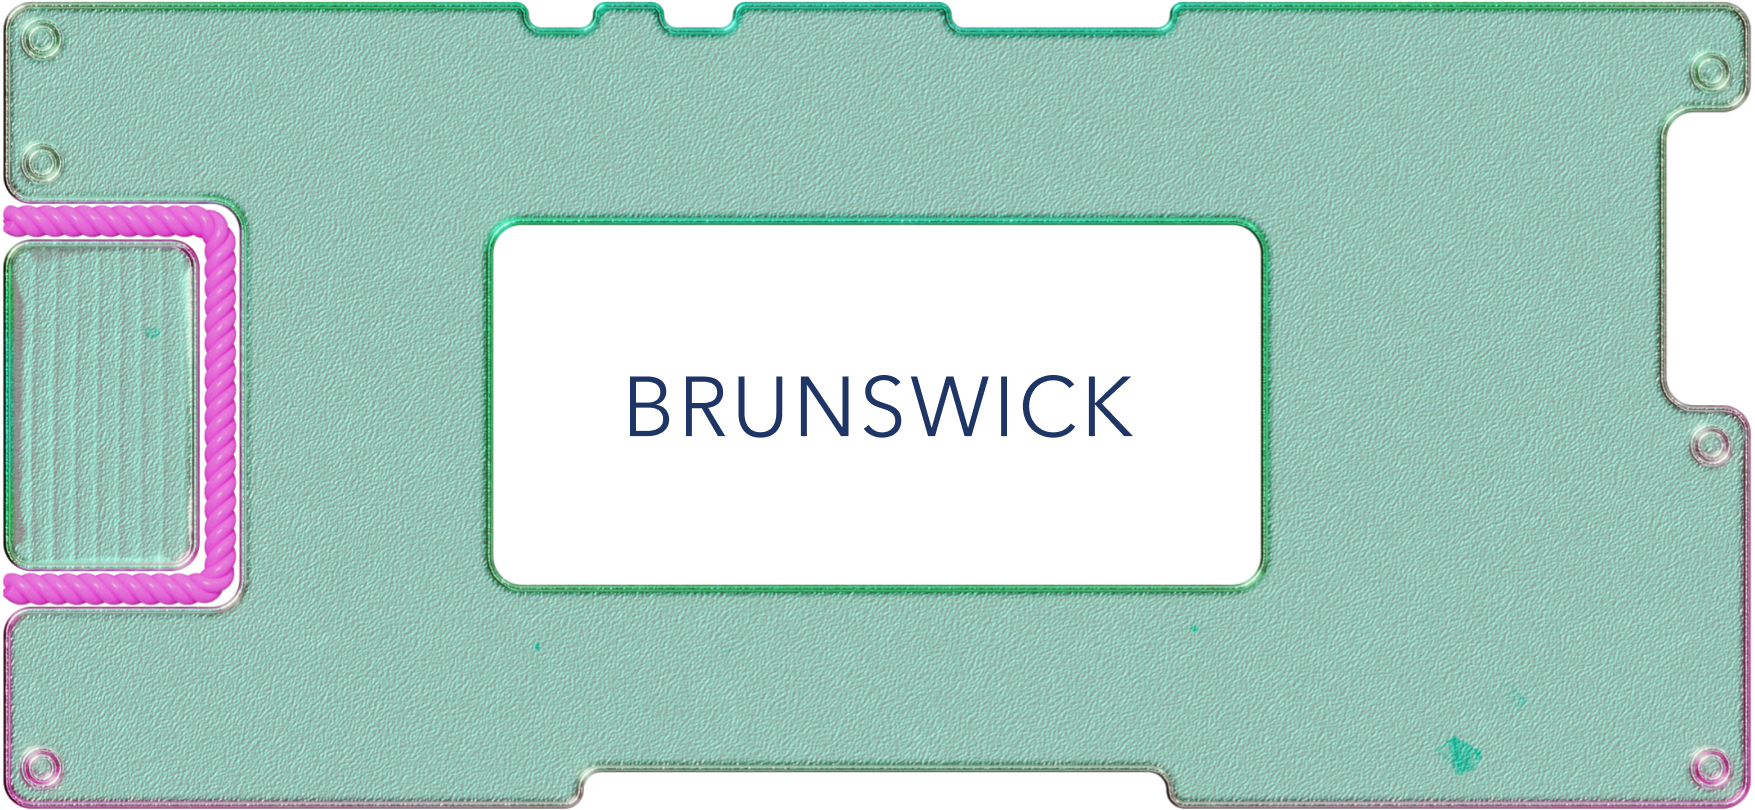 Обзор Brunswick: производитель яхт и моторных лодок